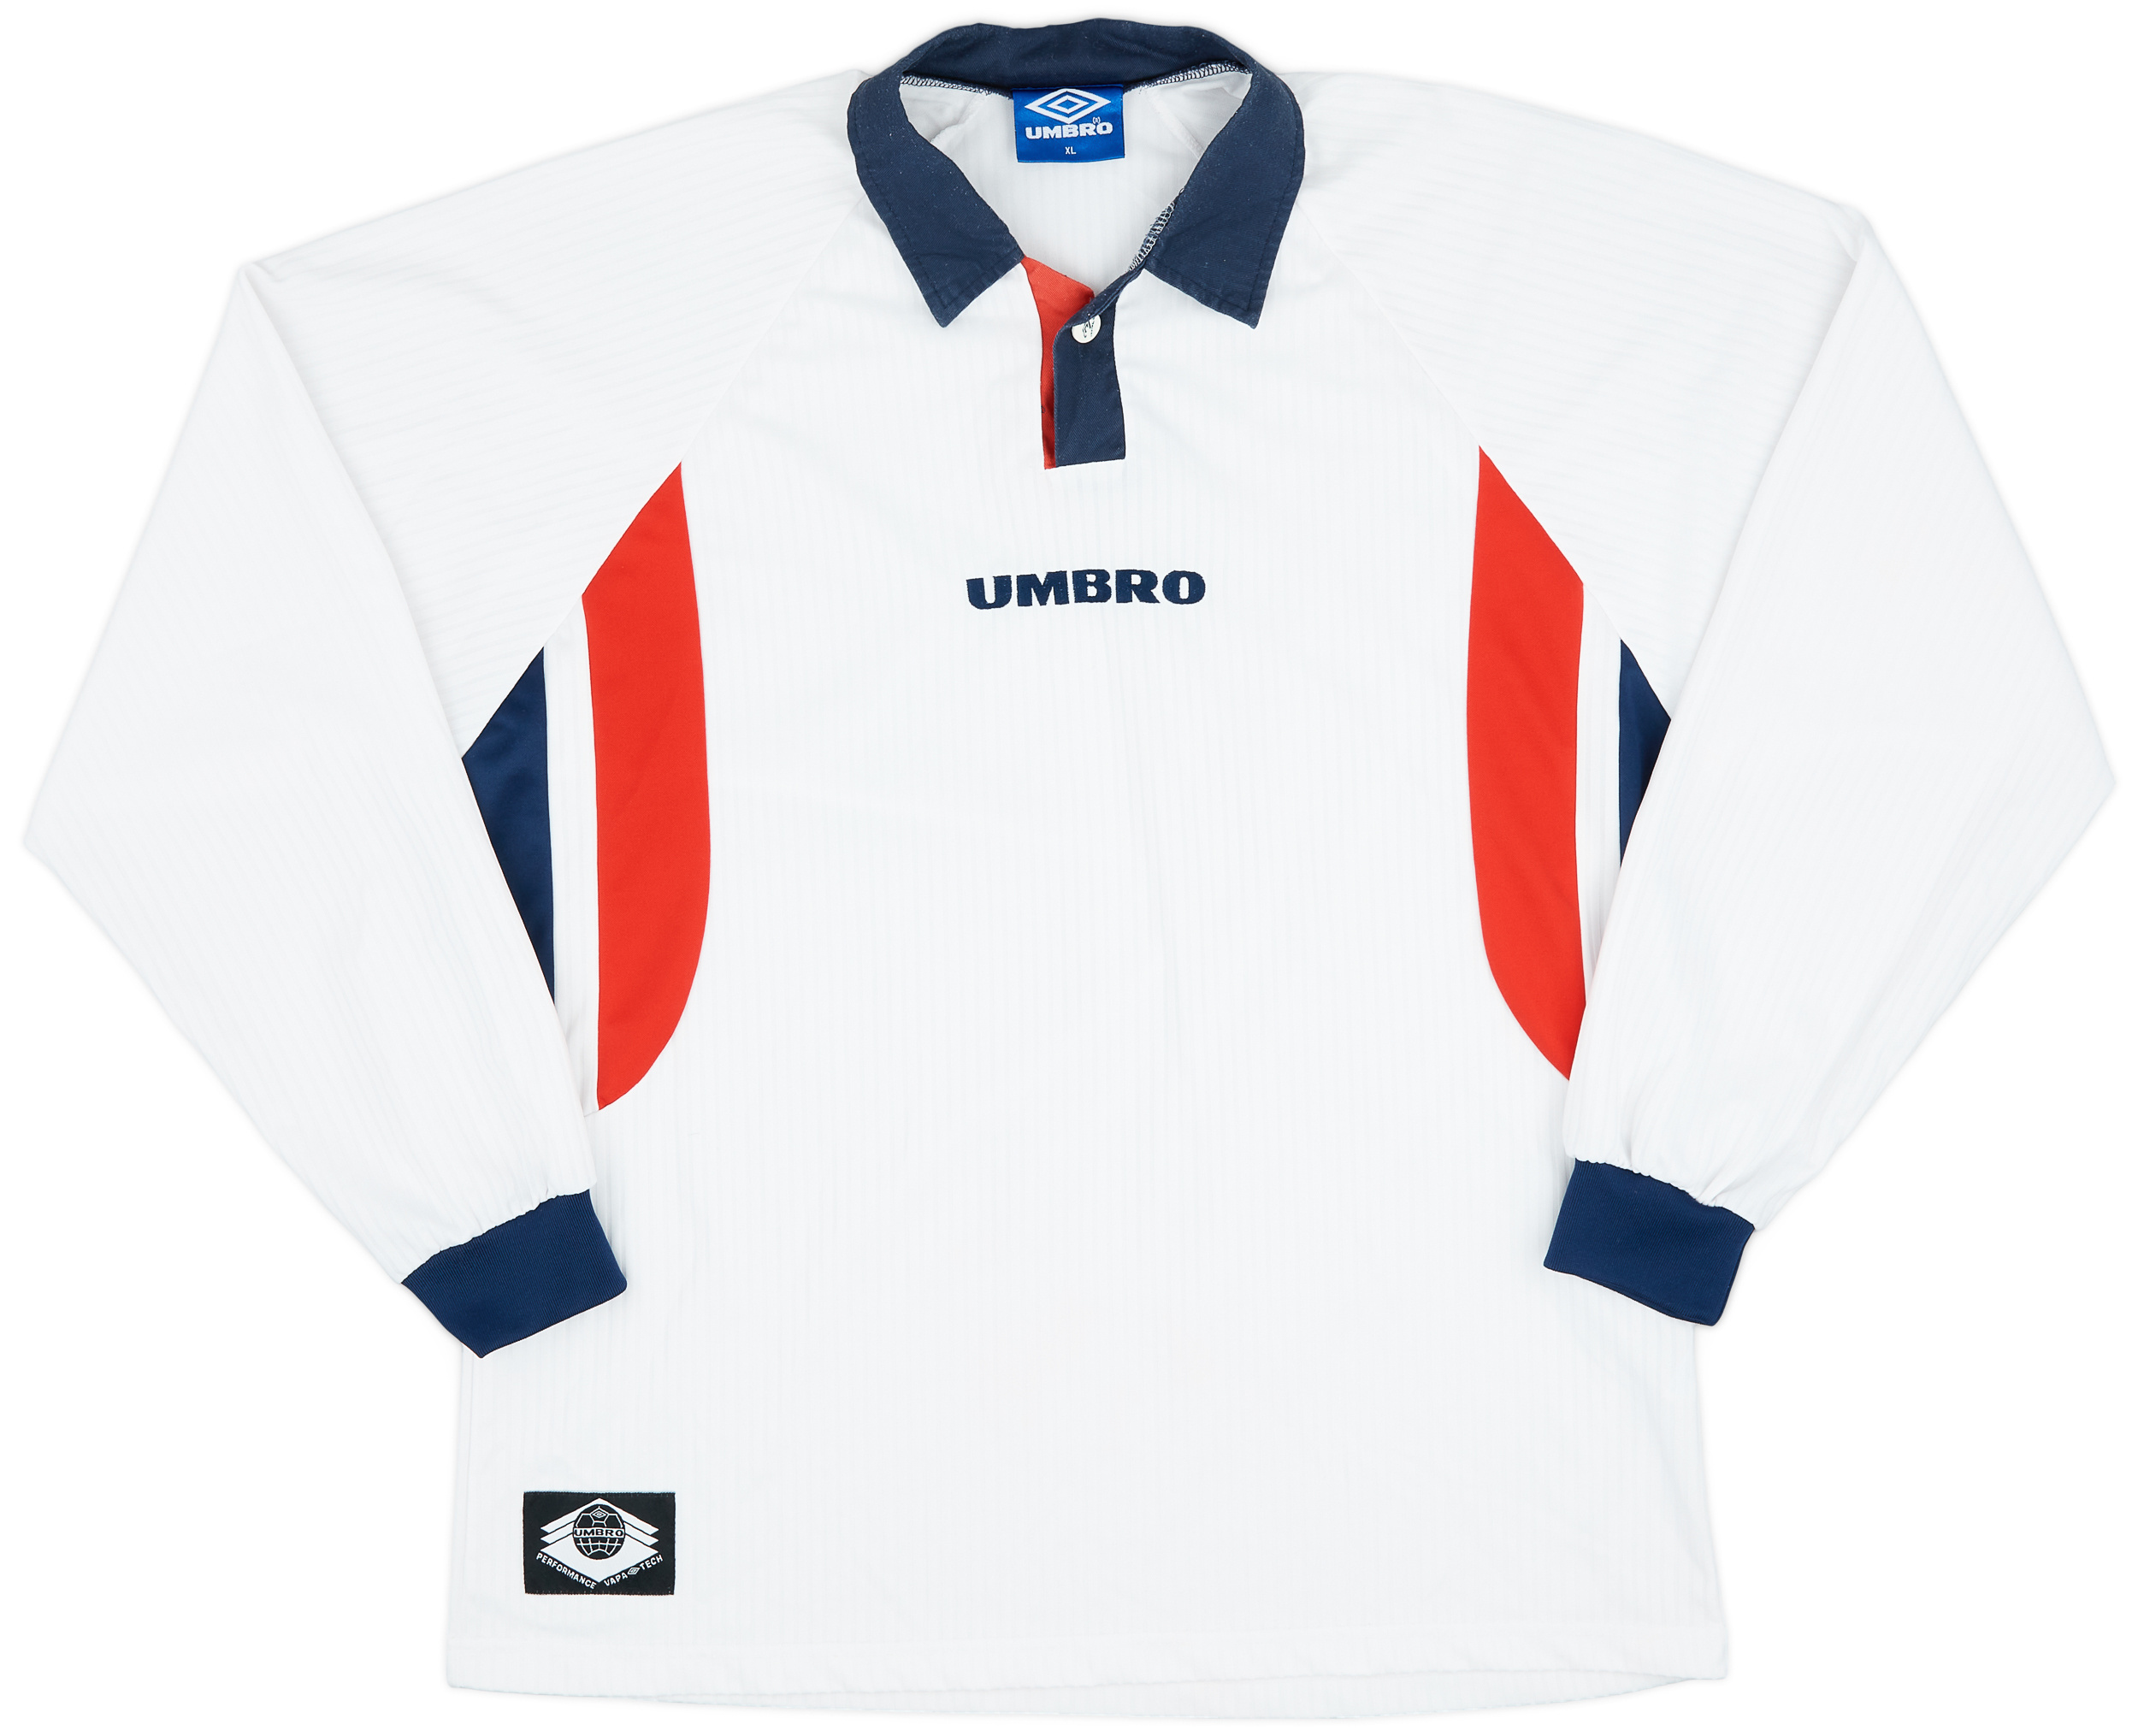 1997 Umbro Home (England) Template Shirt - 9/10 - ()